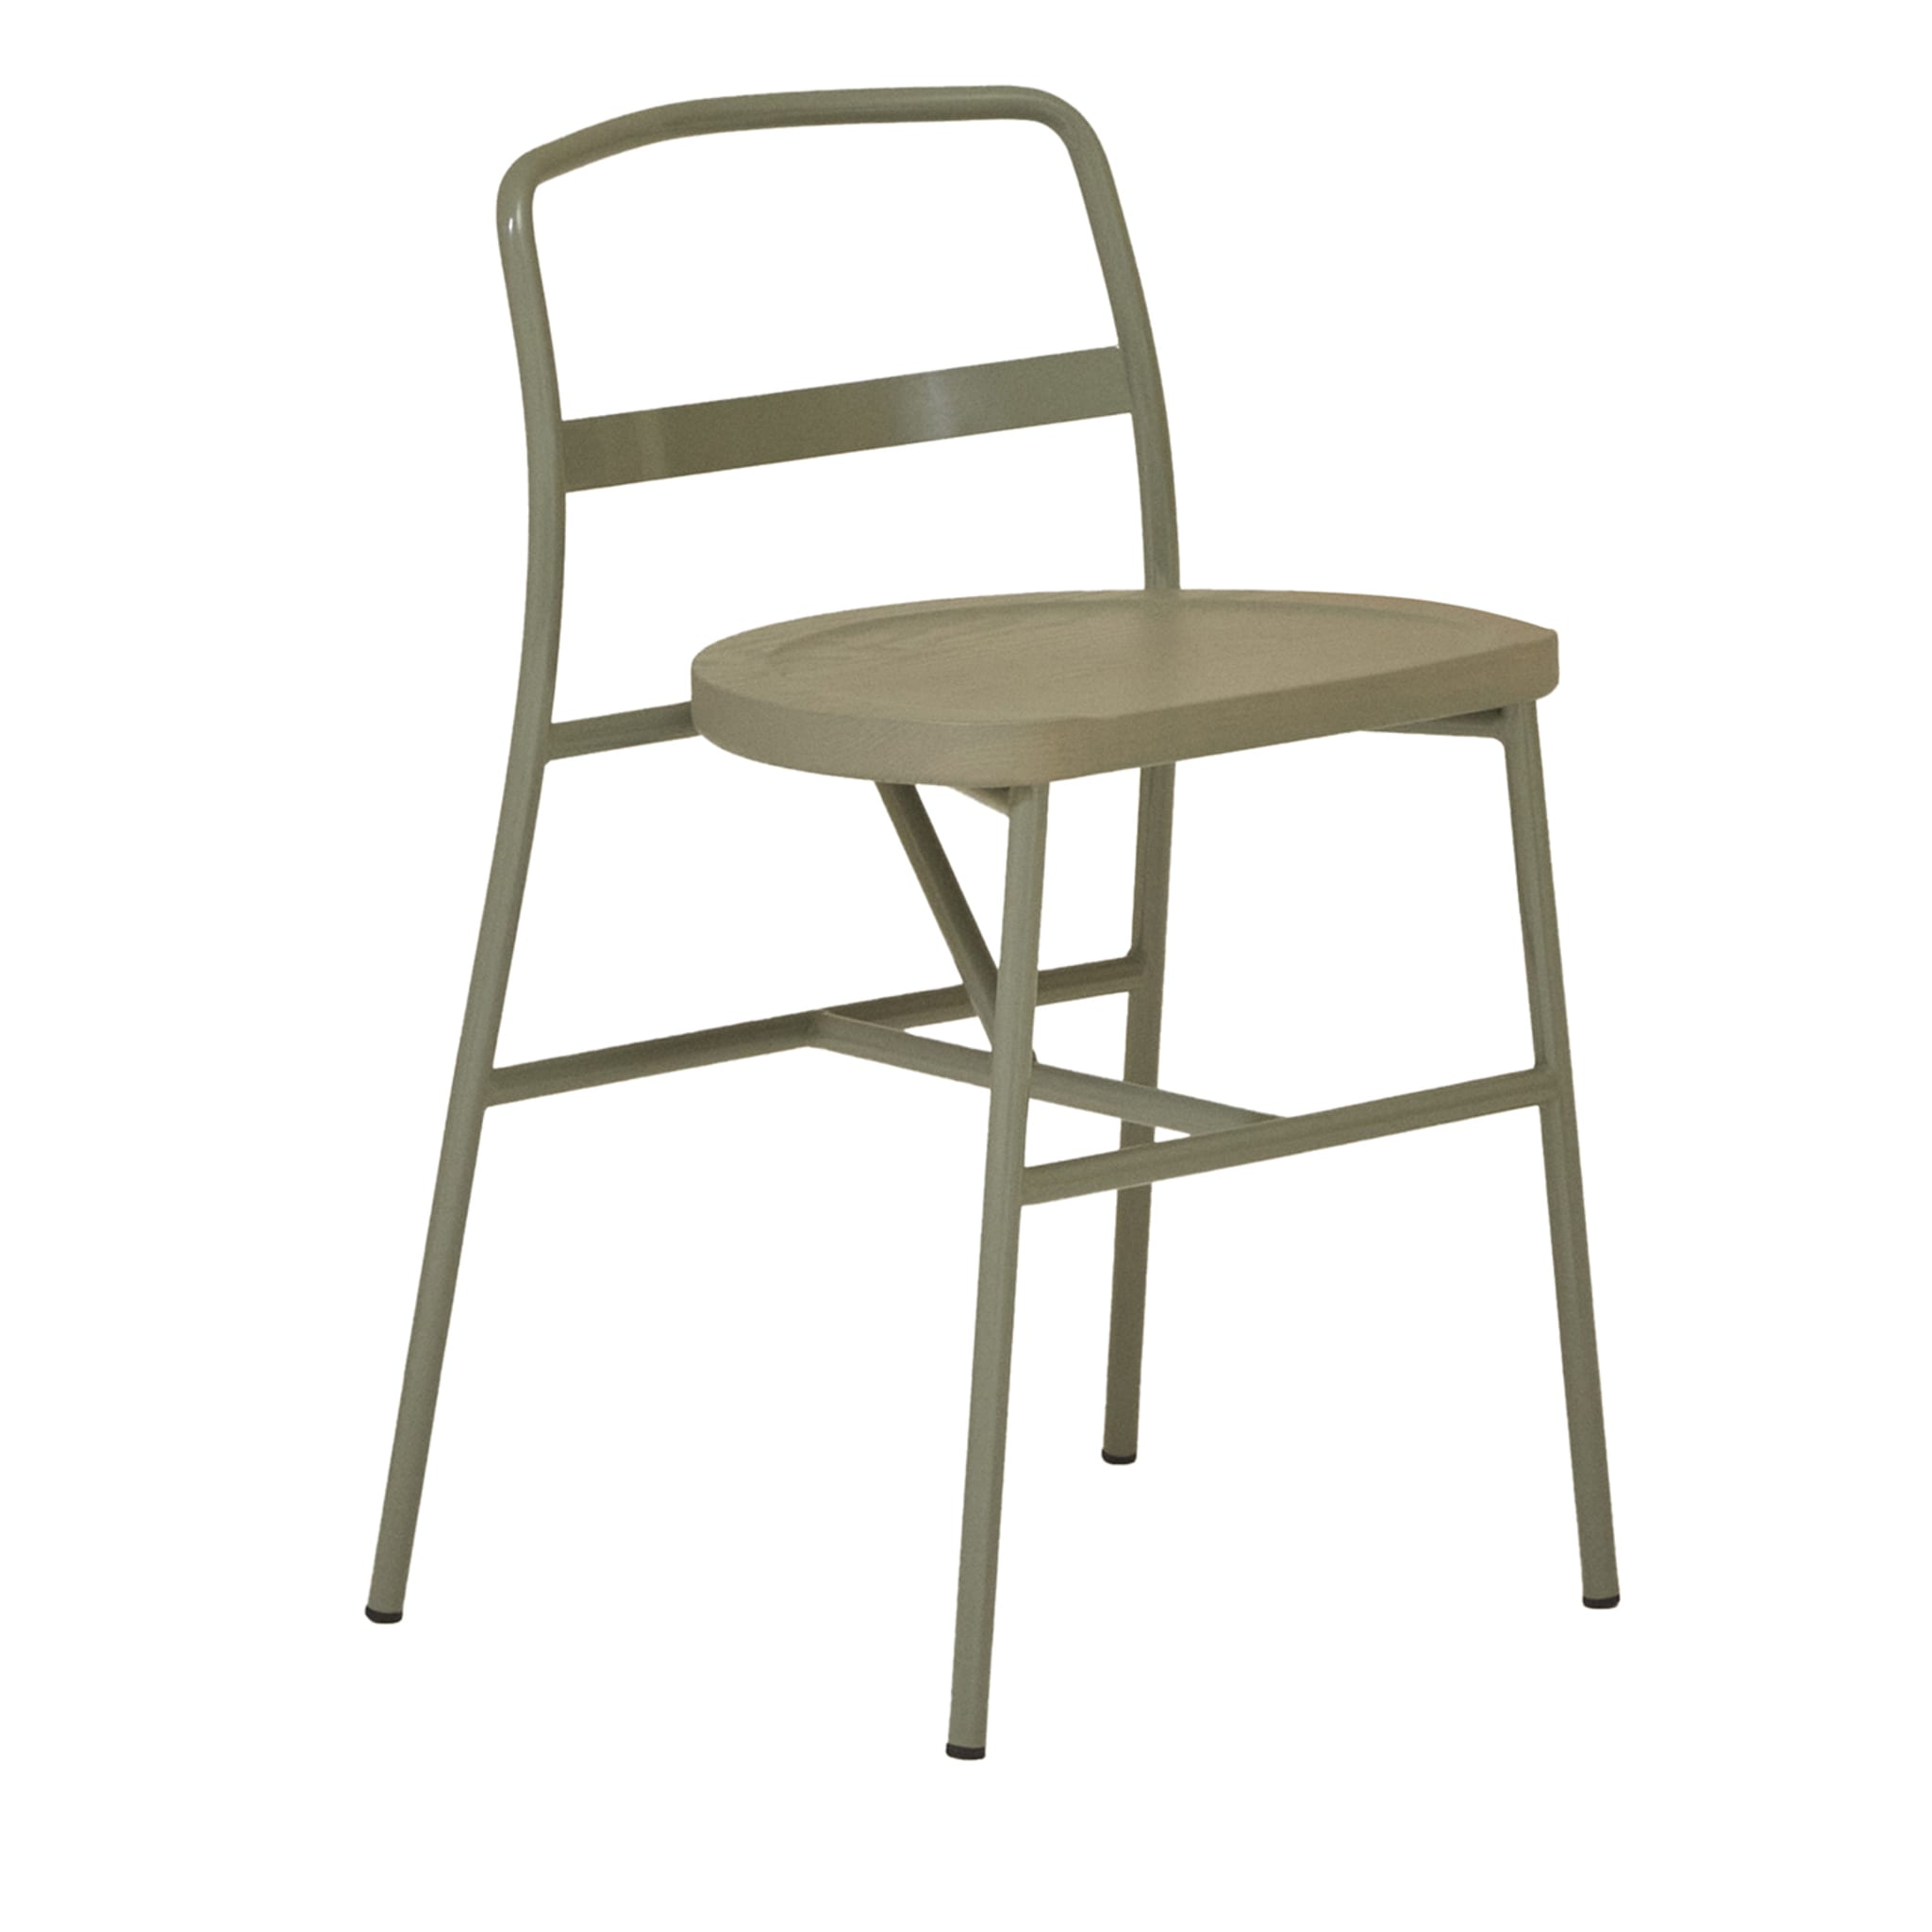 Puccio 726 Cement-Gray Chair by Emilio Nanni - Main view